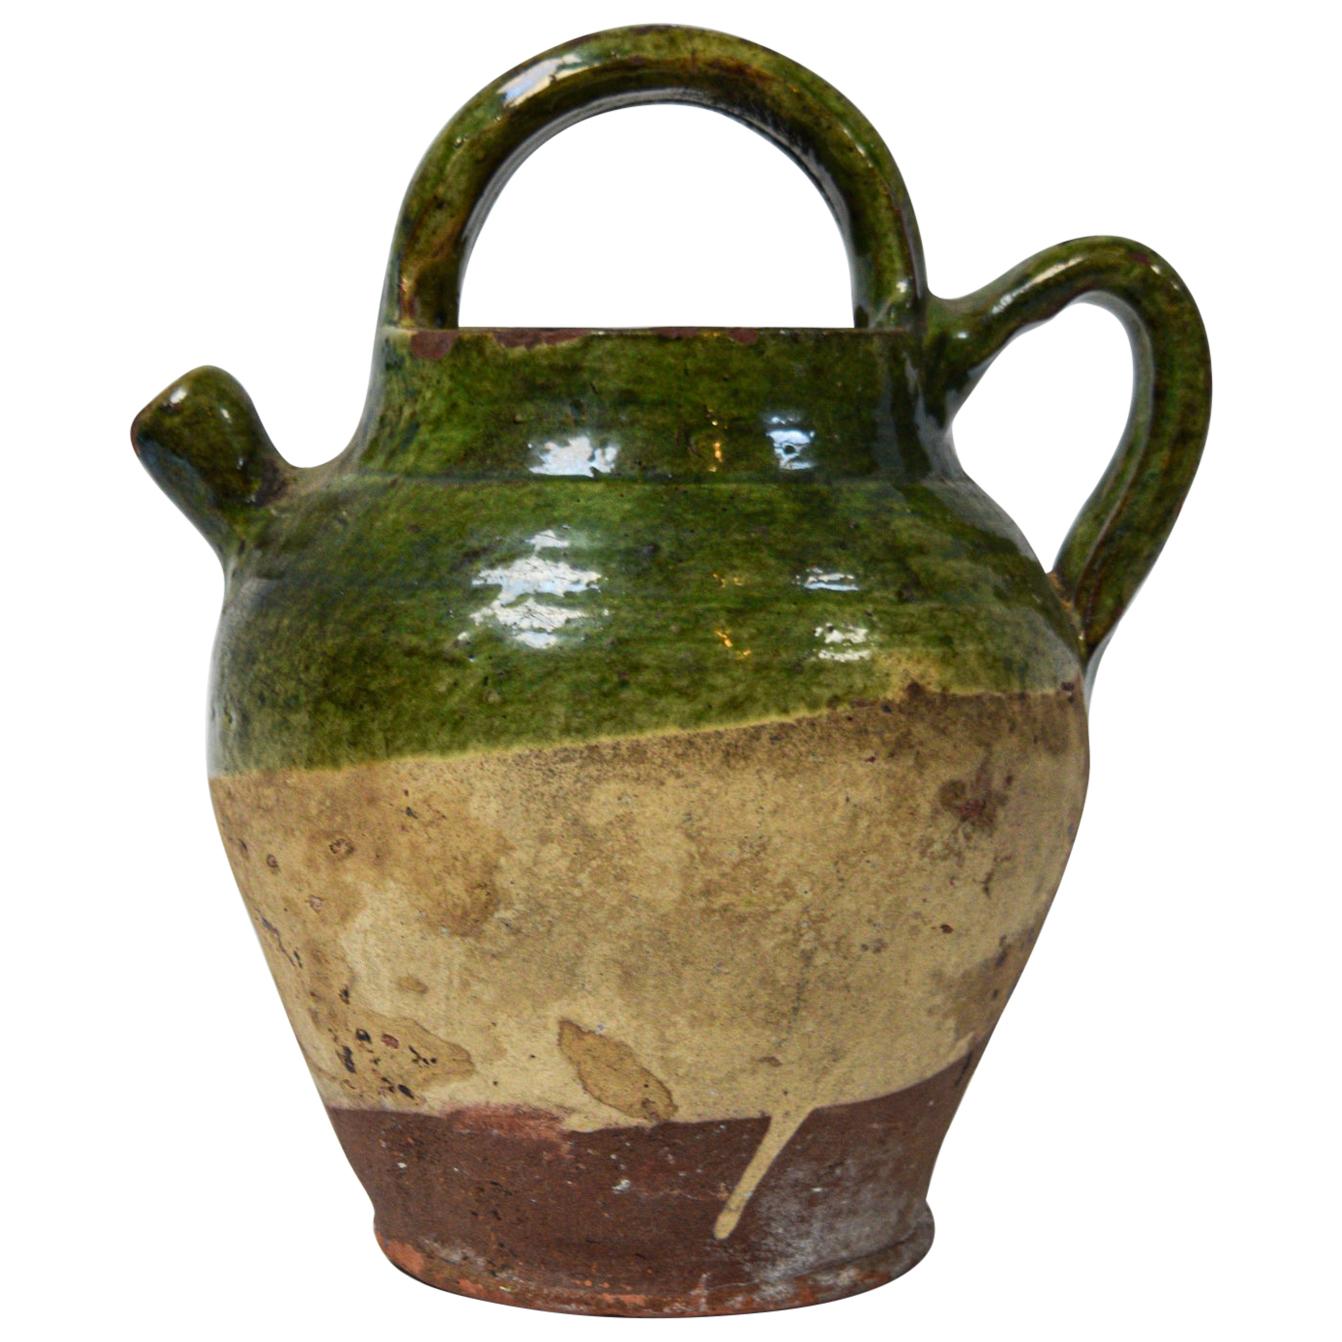 Vintage French Terracotta Confit Pot